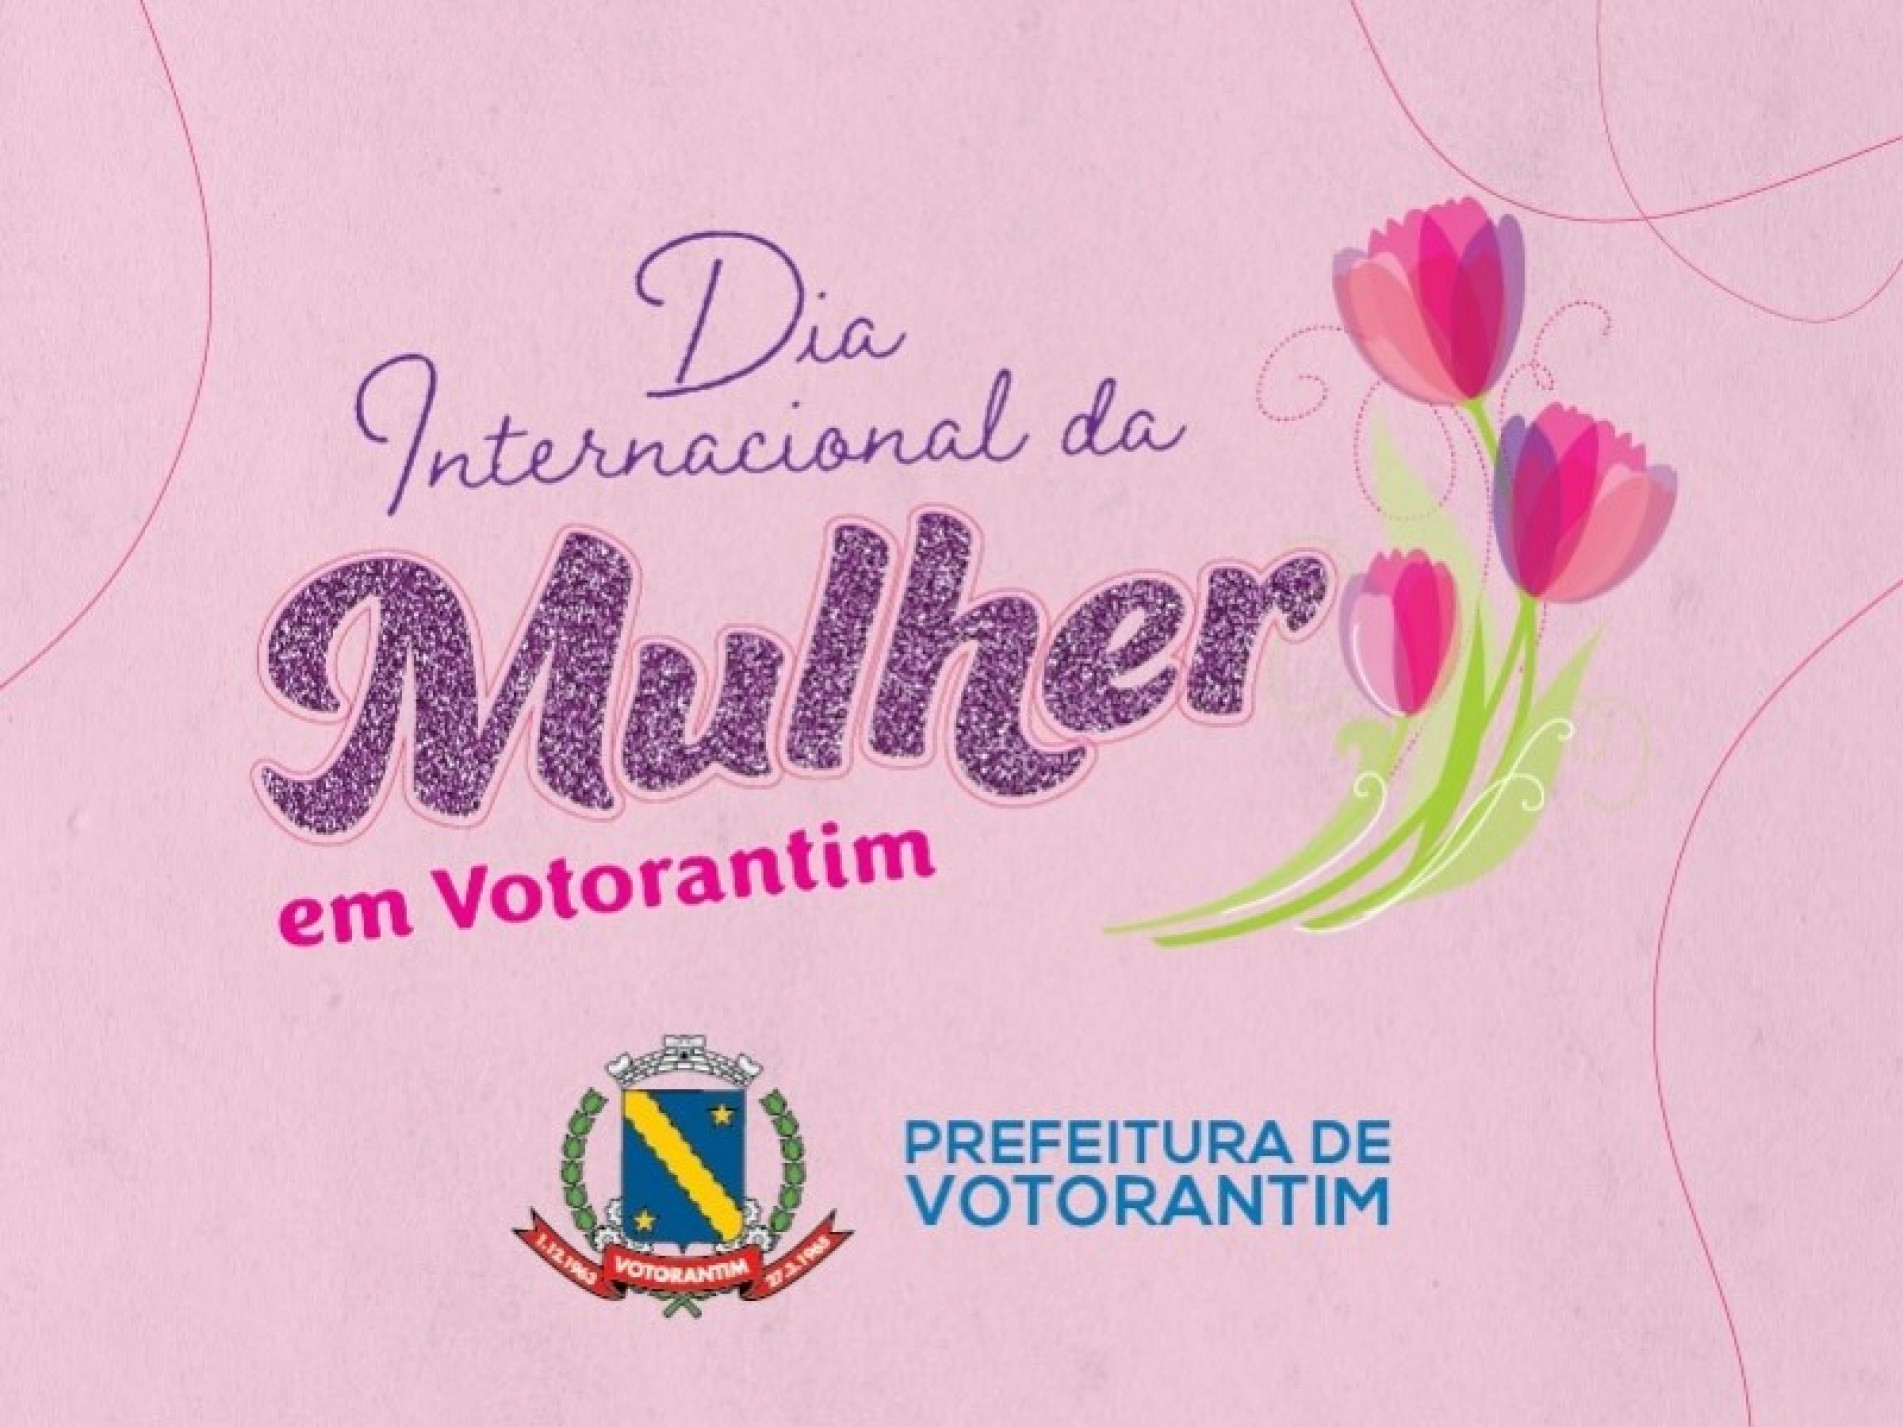 Prefeitura de Votorantim divulga programação especial para o Dia Internacional da Mulher, nesta terça-feira (8)